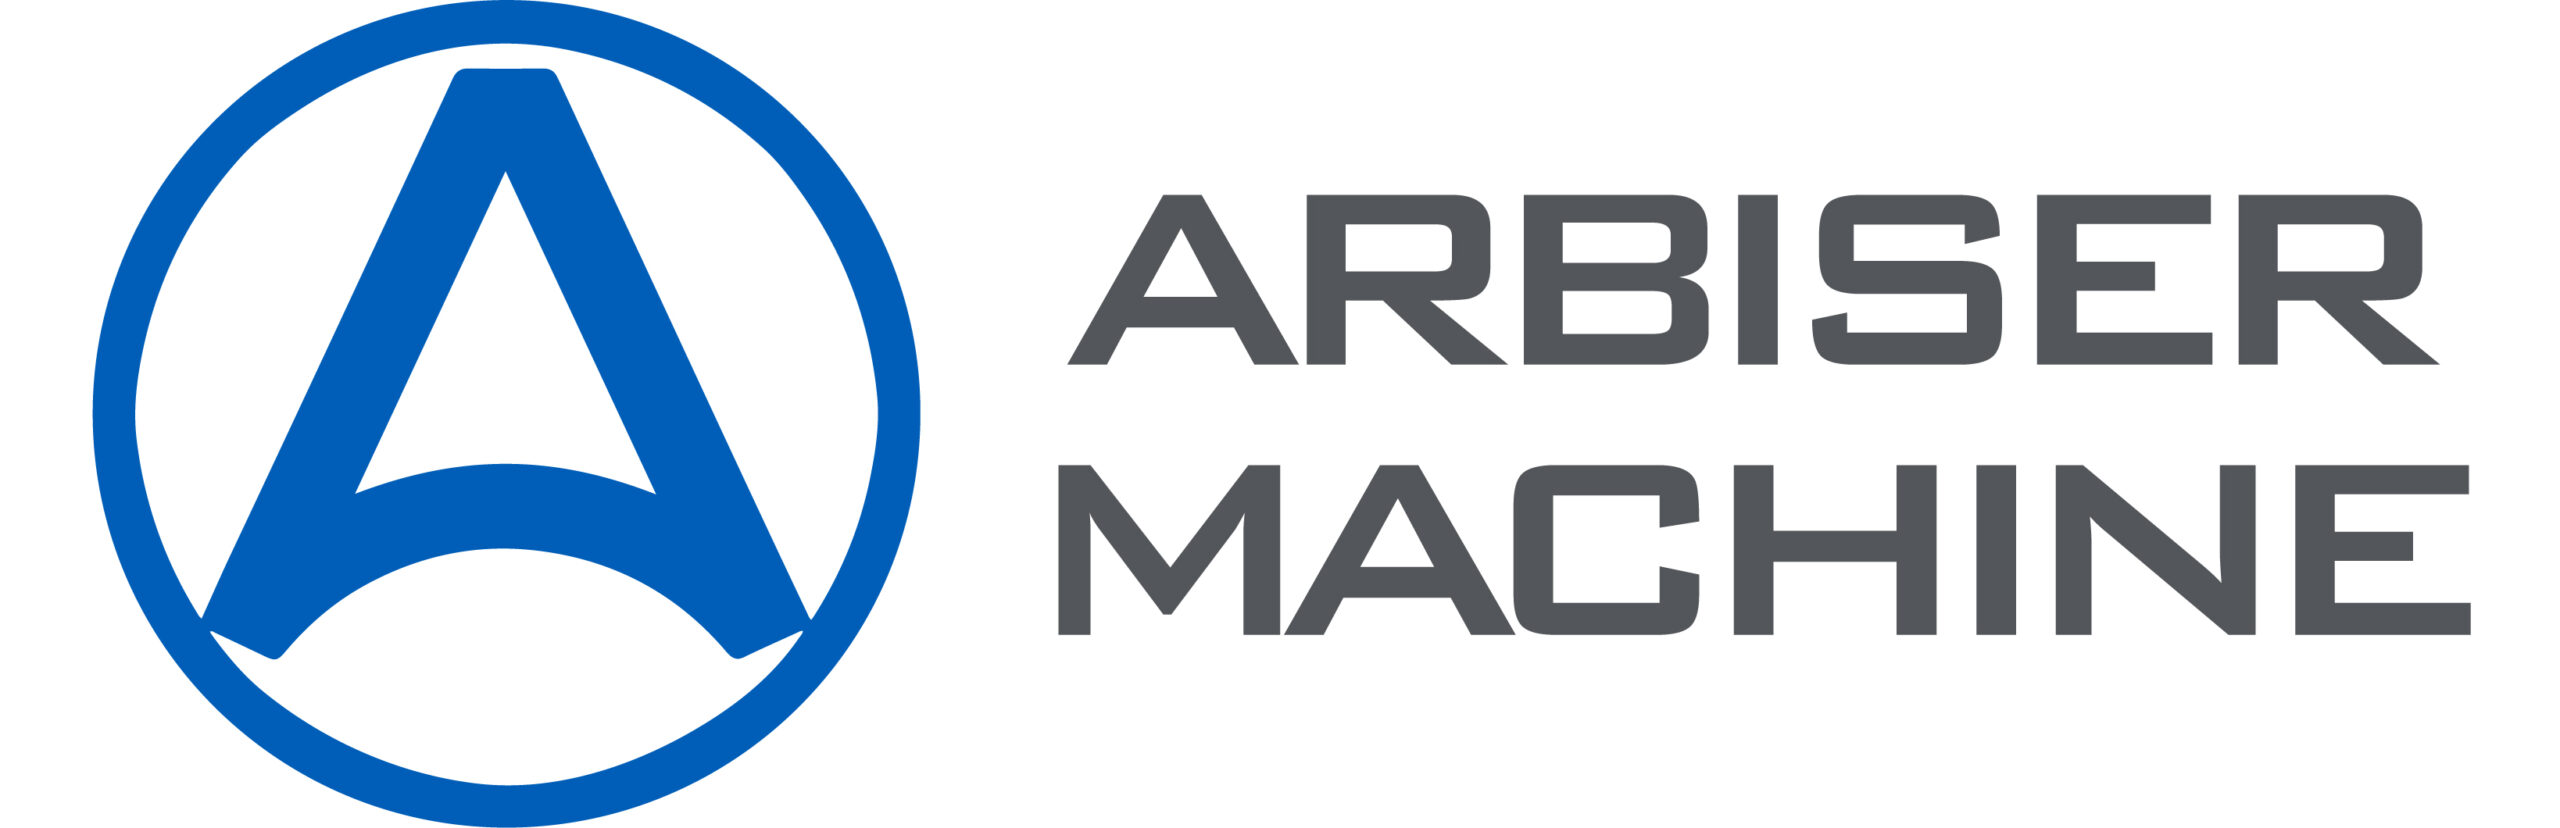 Arbiser Machine